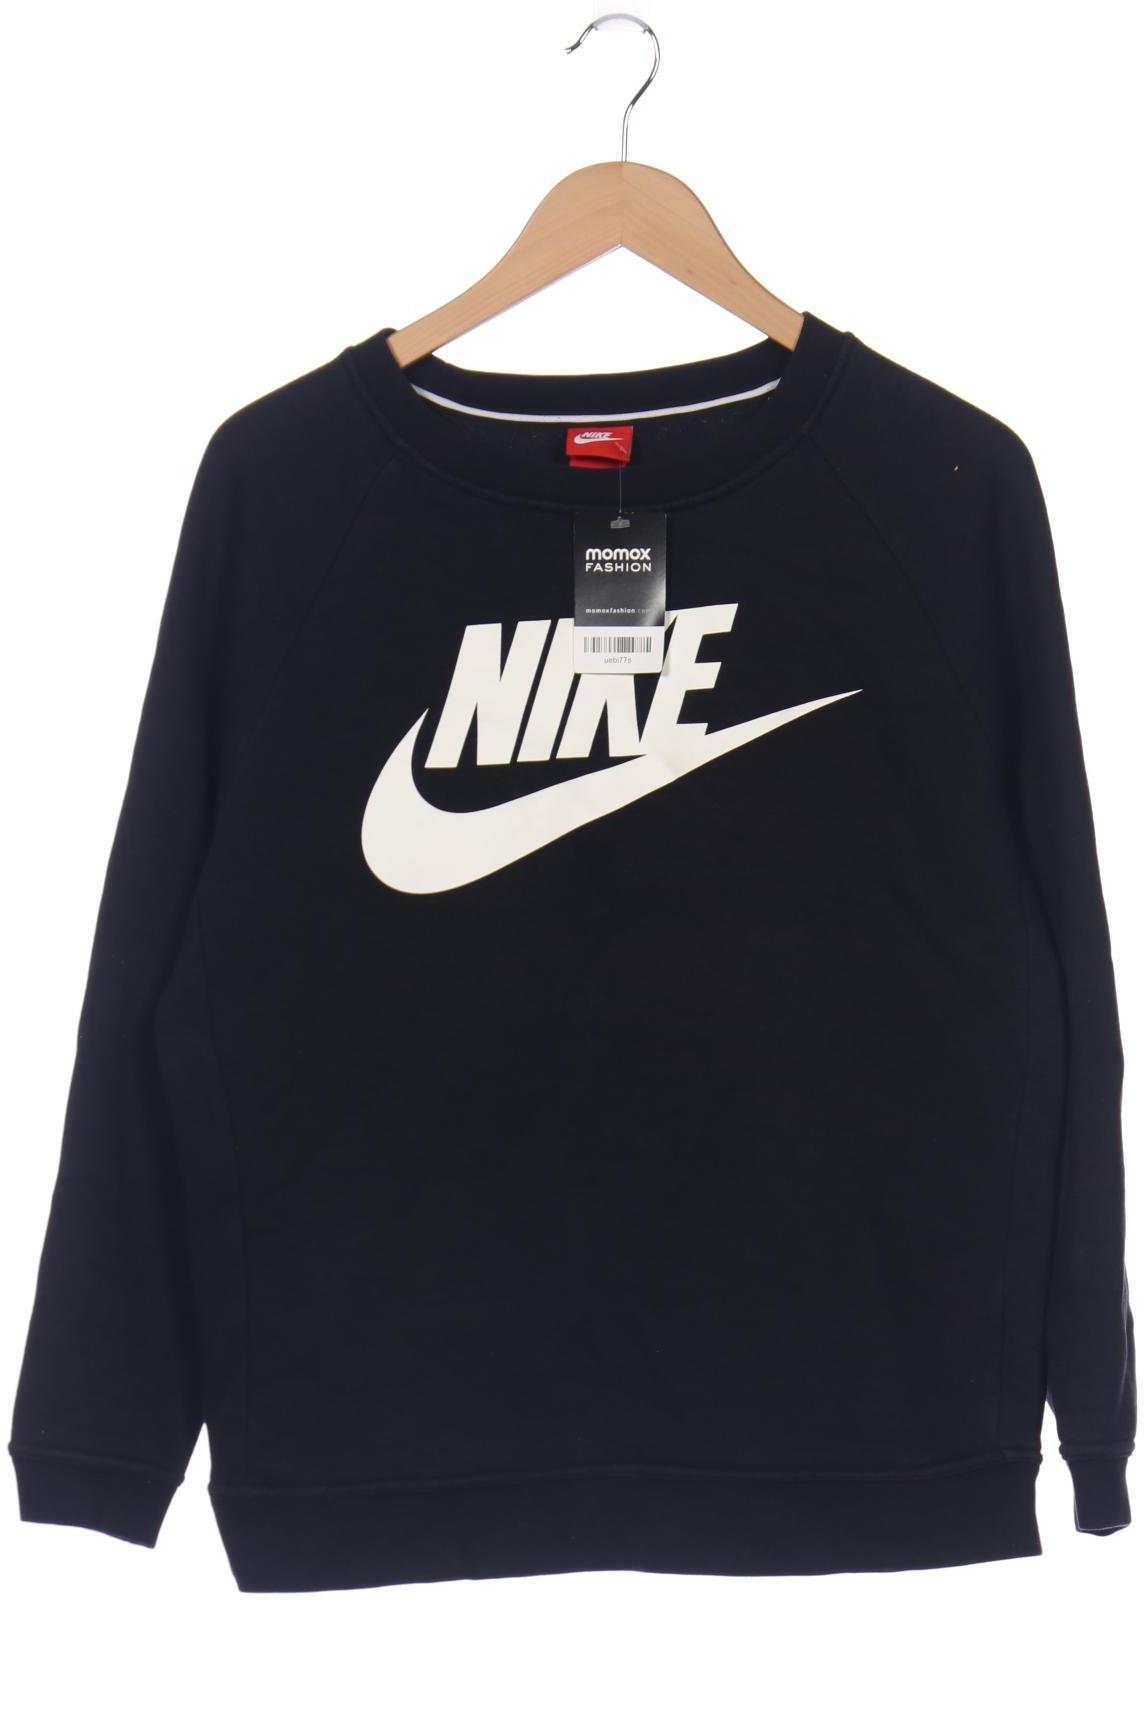 Nike Damen Sweatshirt, schwarz, Gr. 38 von Nike